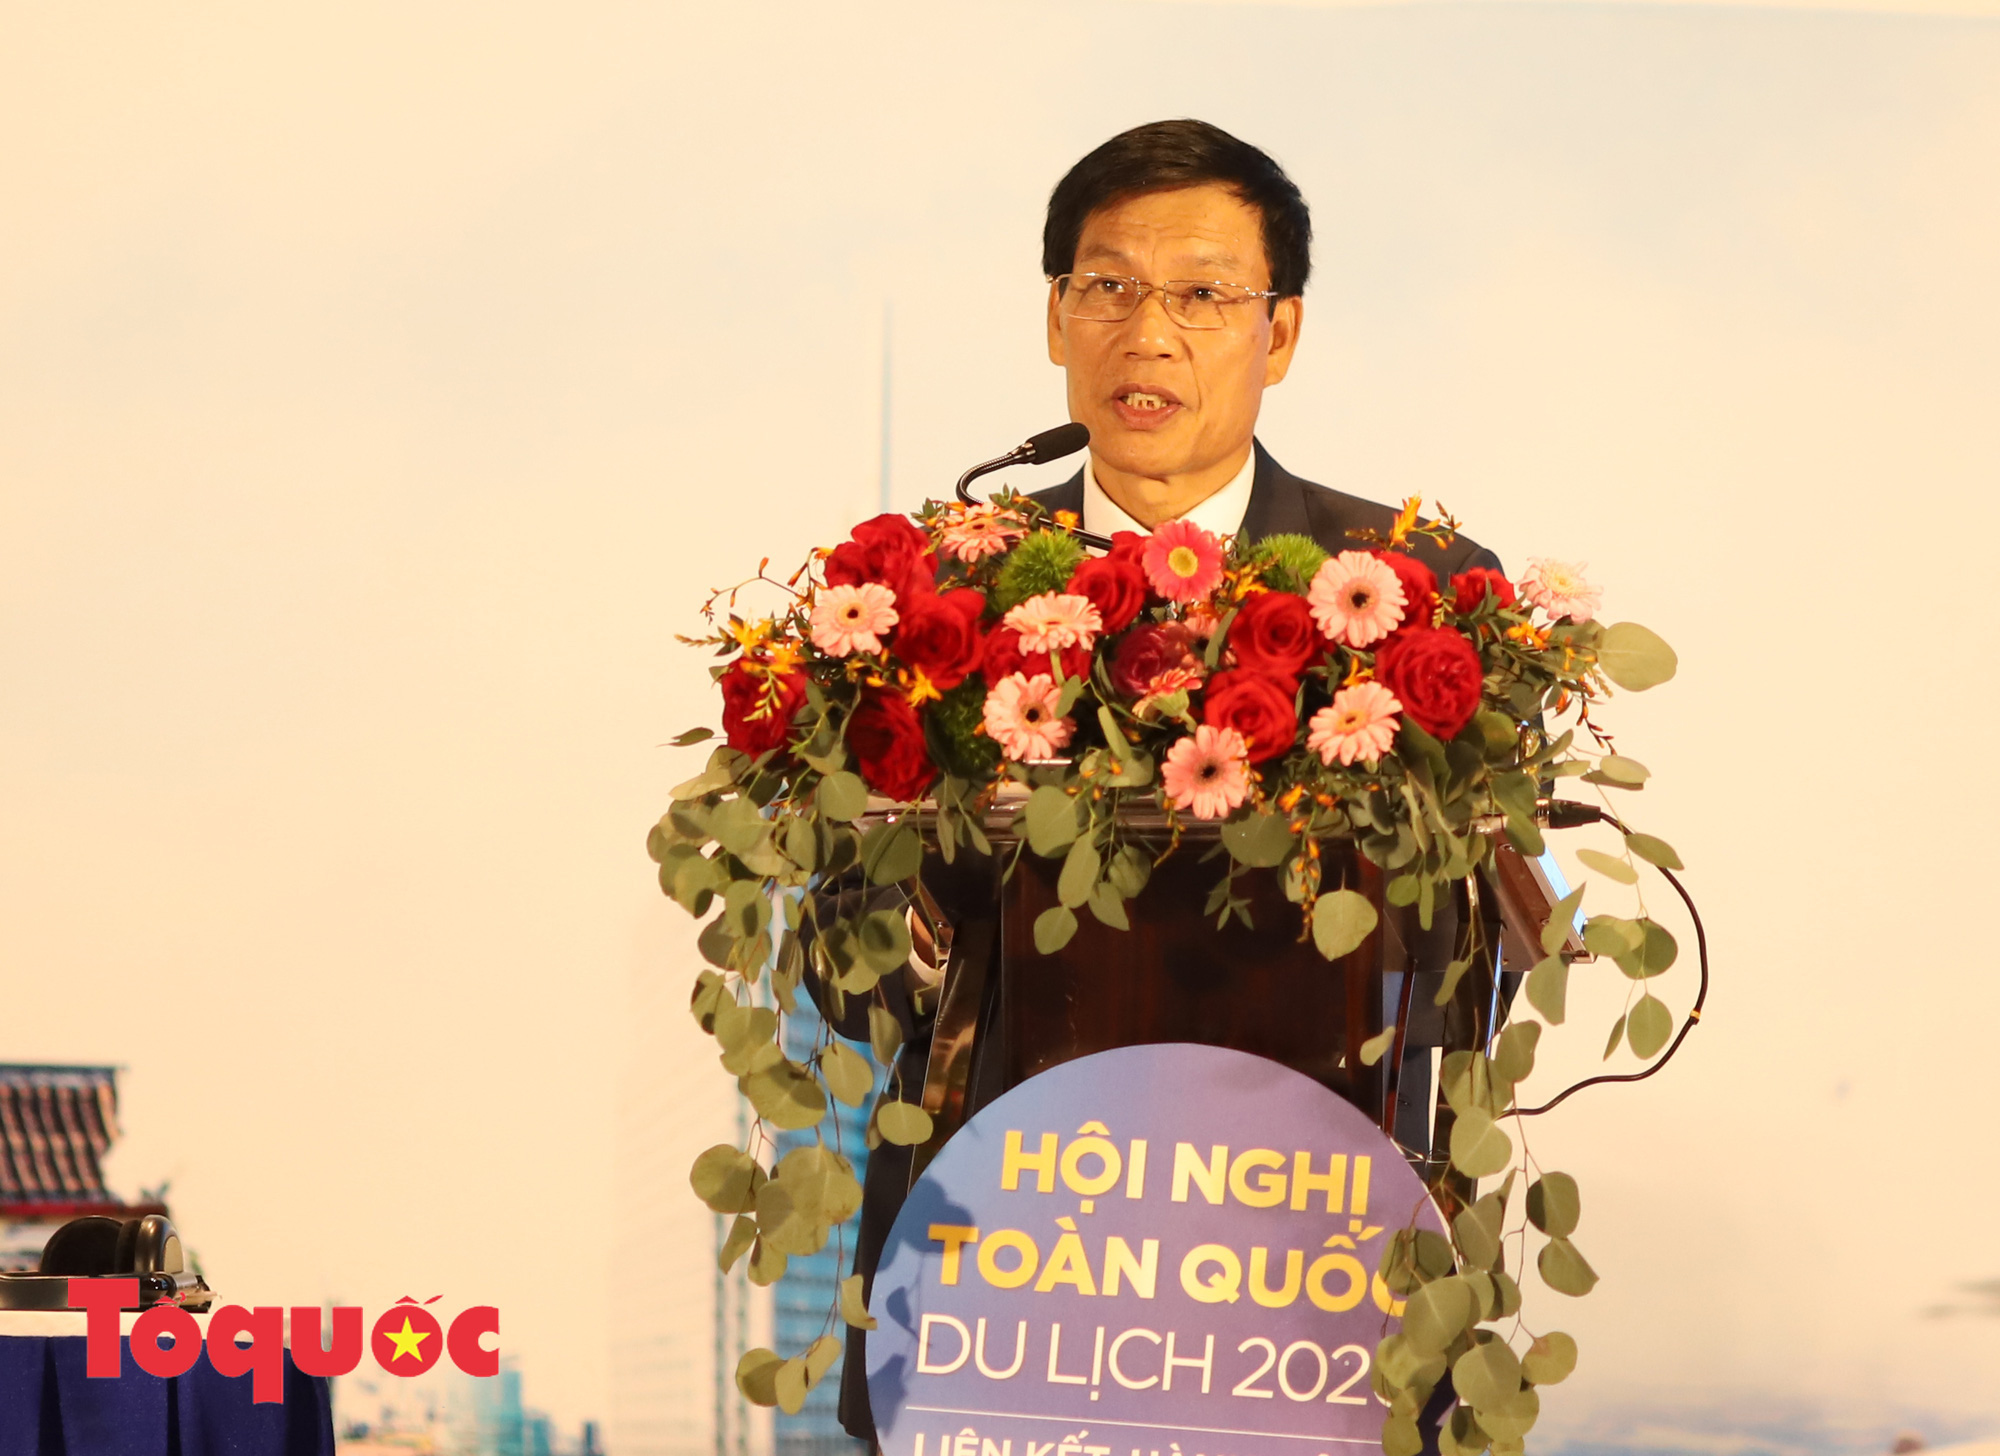 Bộ trưởng Nguyễn Ngọc Thiện: “Vừa an toàn phòng chống dịch vừa phát triển du lịch an toàn, hiệu quả”